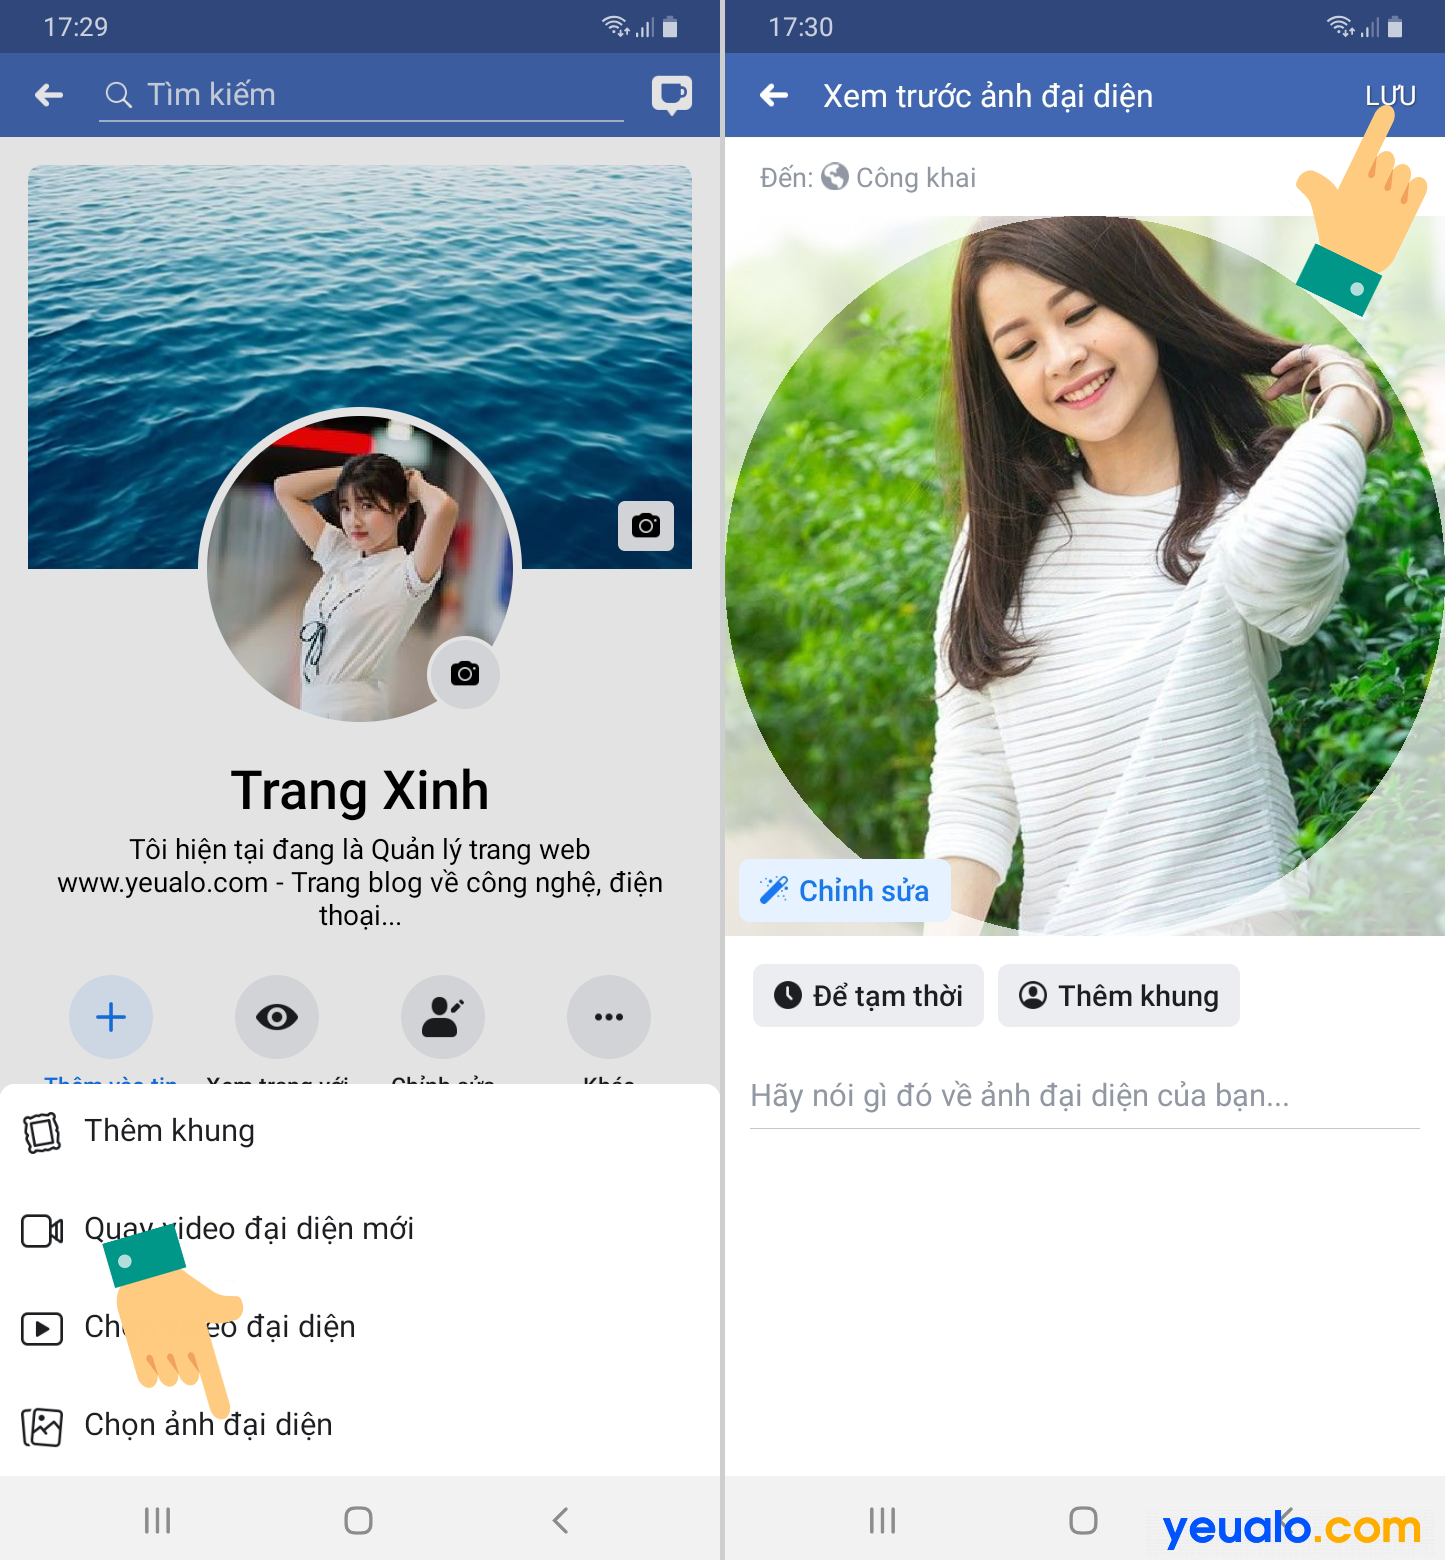 Cách ẩn ảnh bìa trên Facebook avatar Facebook chế độ một mình tôi   Networks Business Online Việt Nam  International VH2